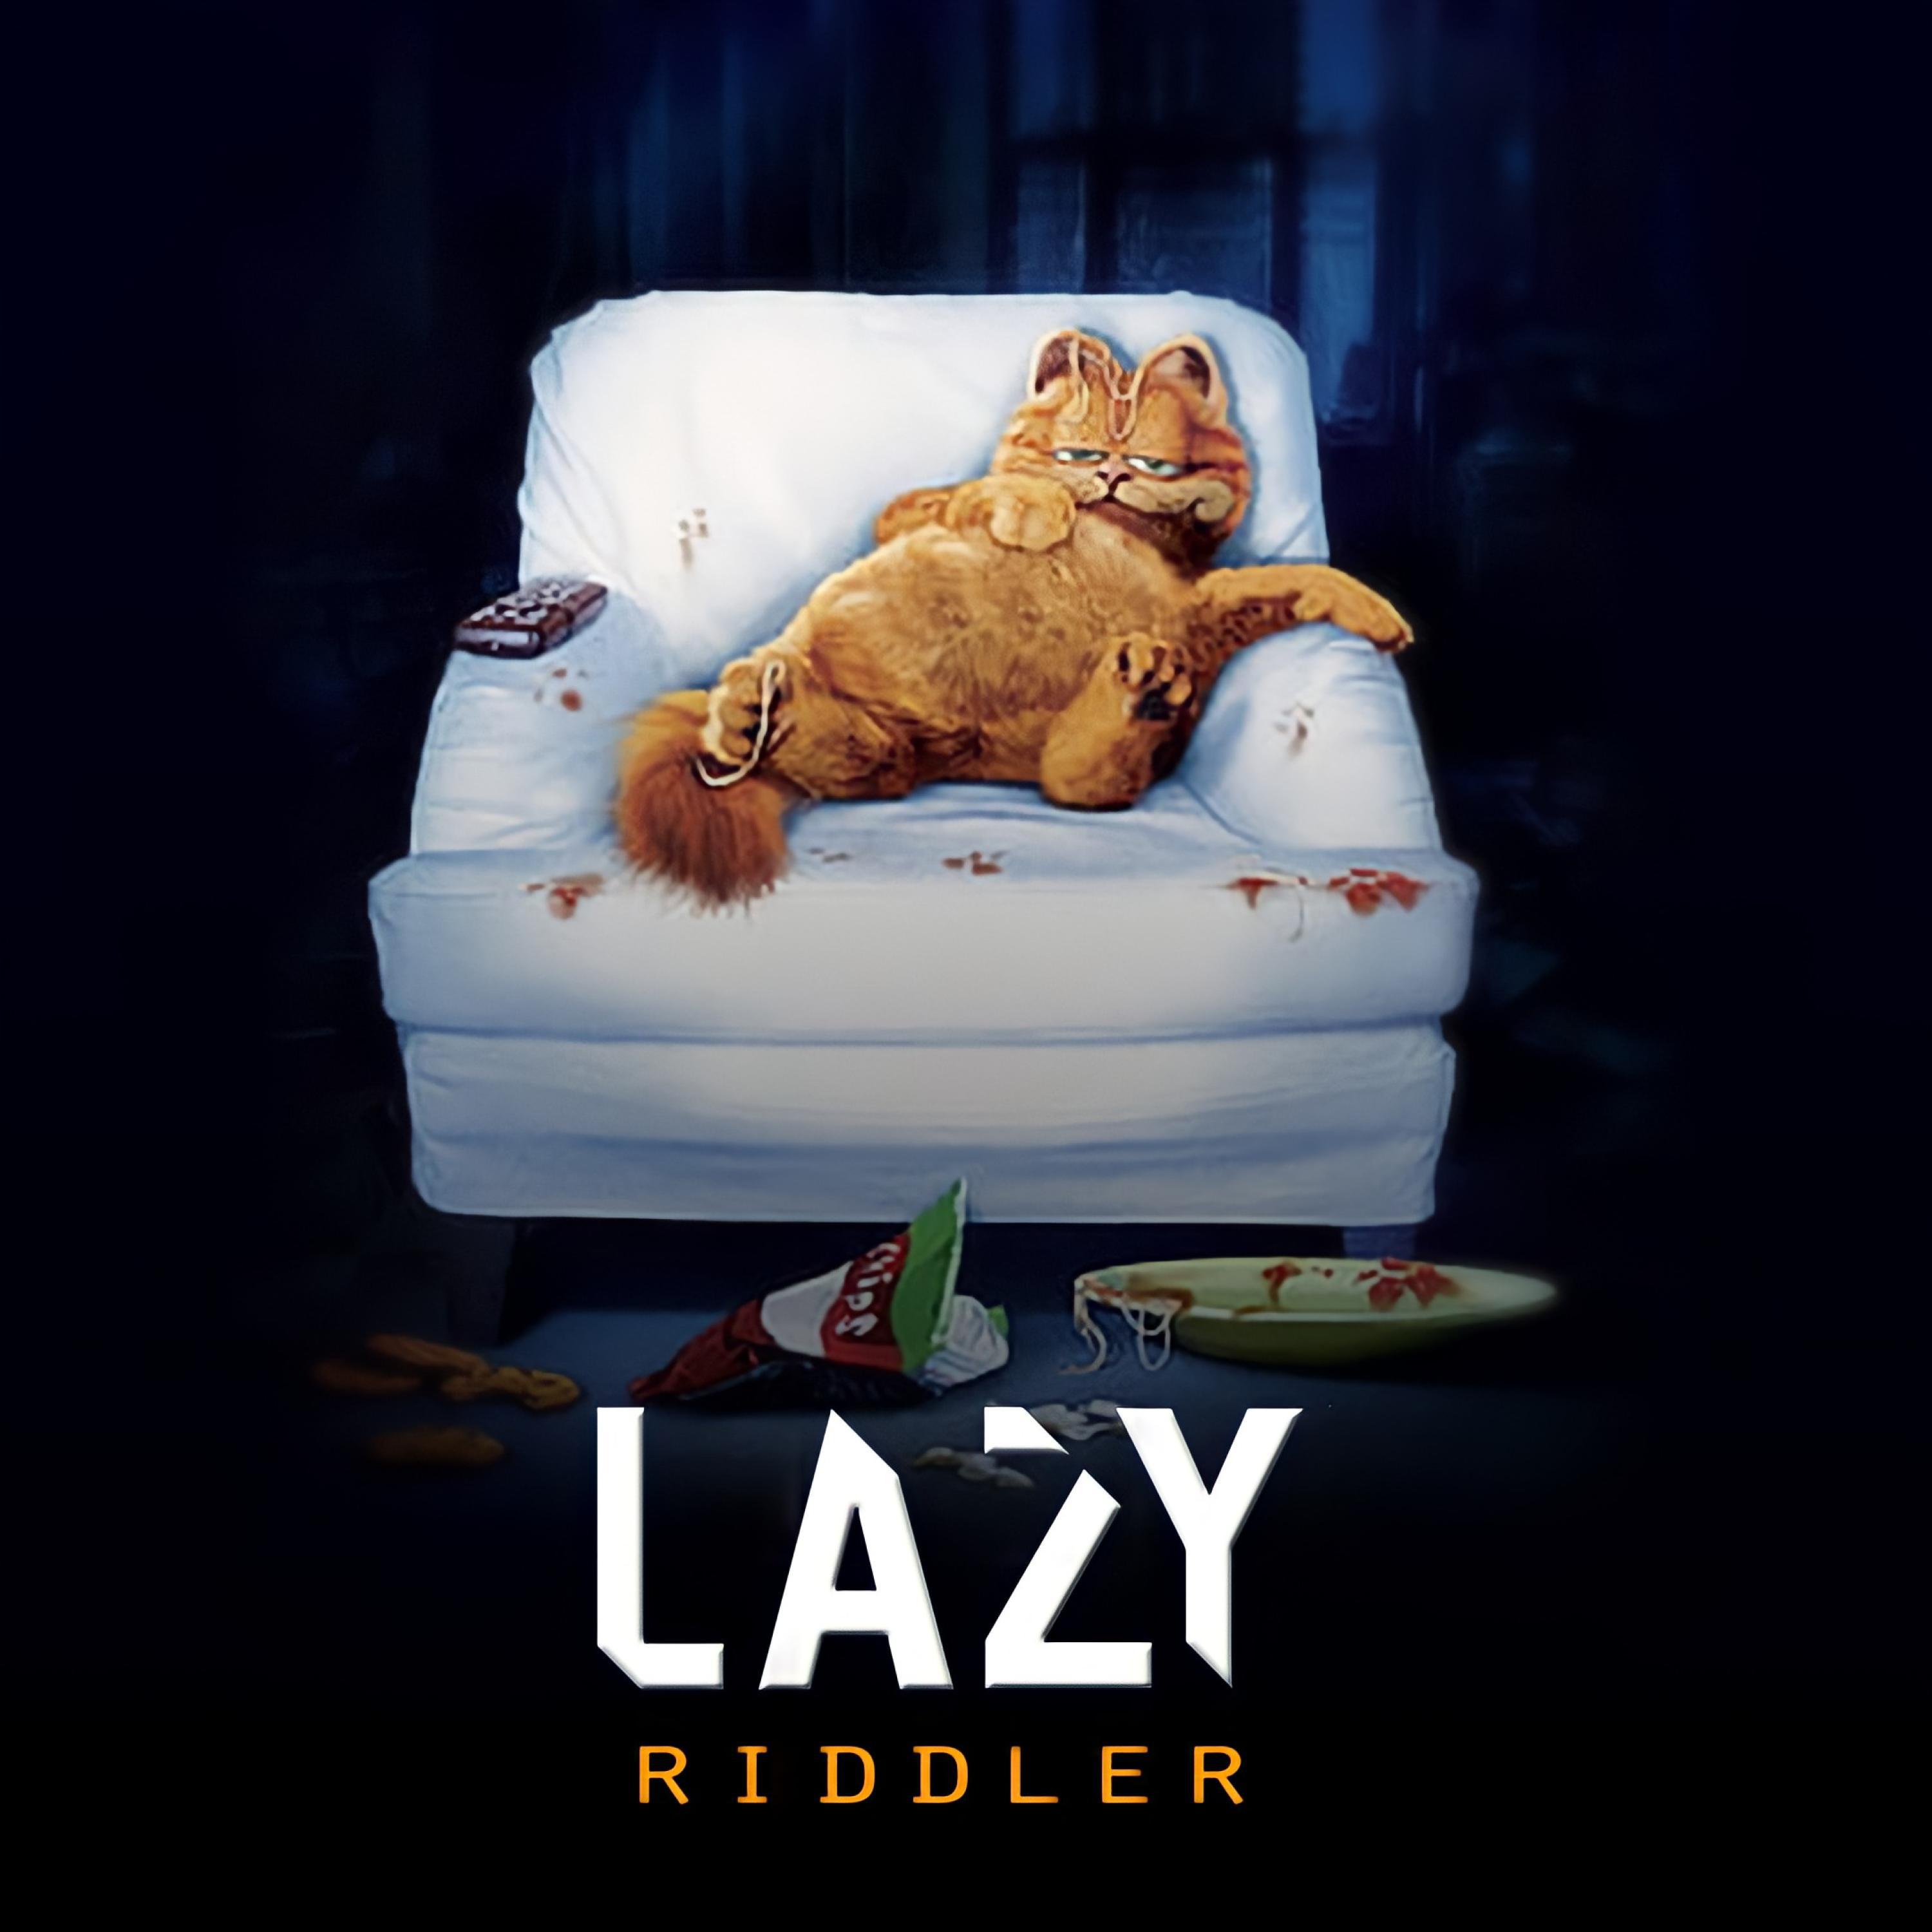 Riddler - LAZY